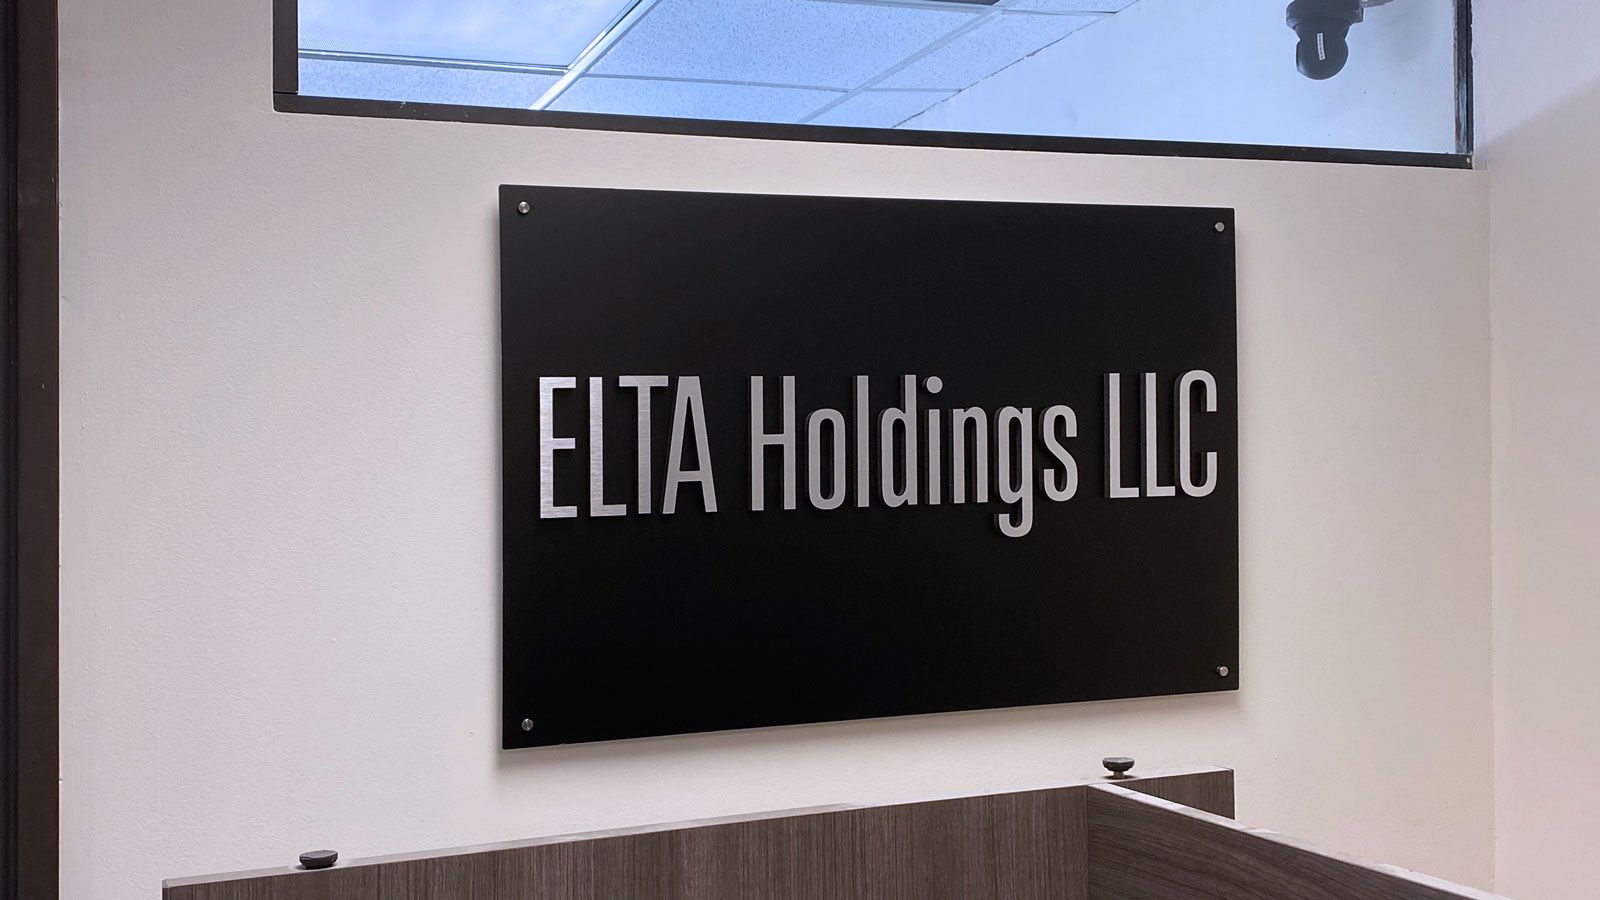 elta holdings ultraboard 3d letters